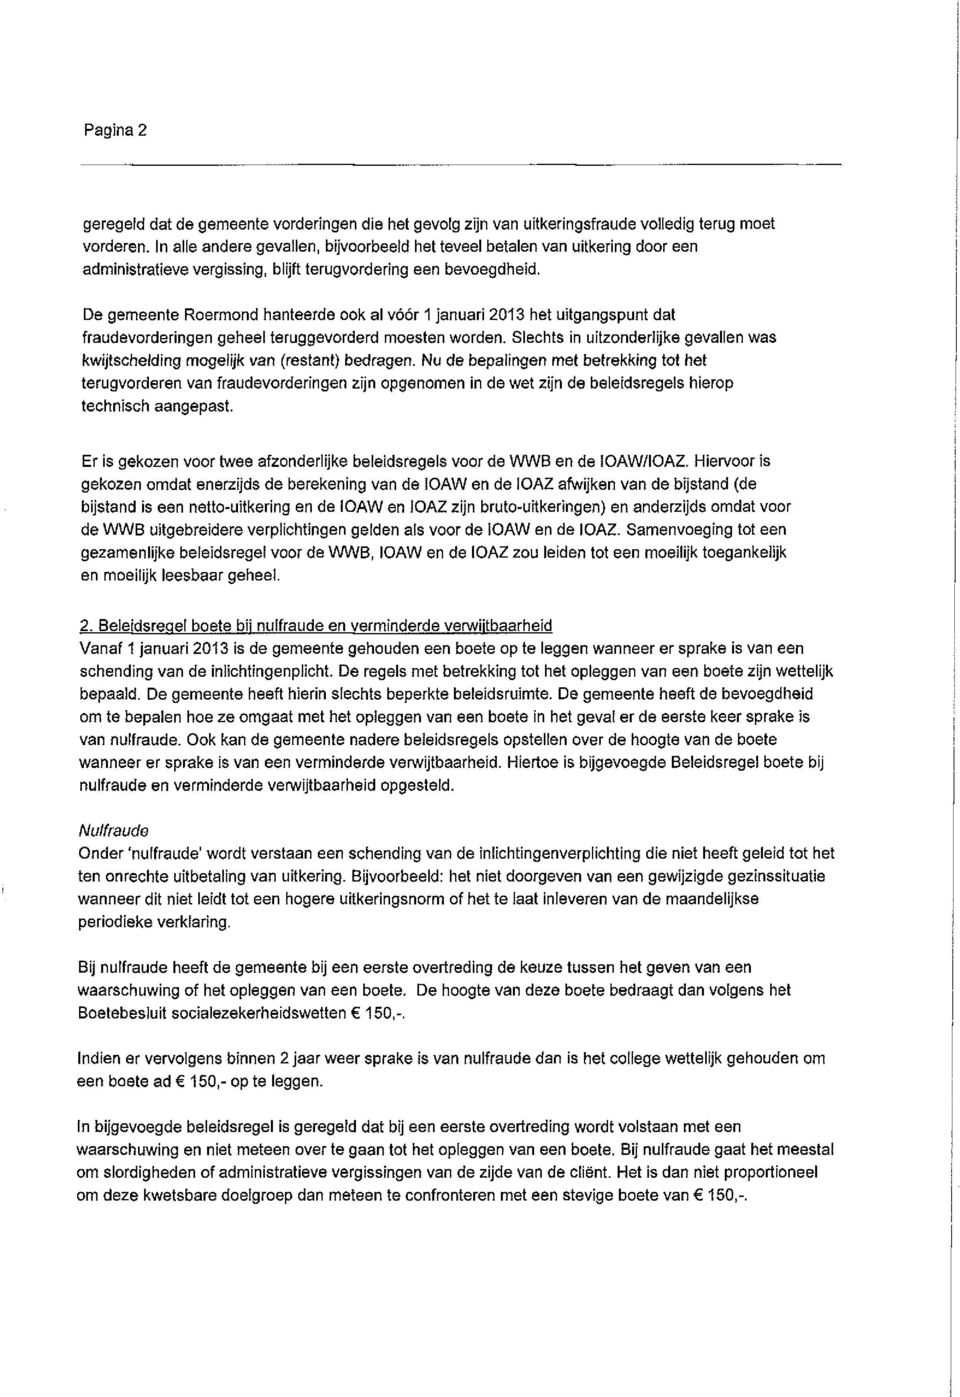 De gemeente Roermond hanteerde ook al vóór 1 januari 2013 het uitgangspunt dat fraudevorderingen geheel teruggevorderd moesten worden.